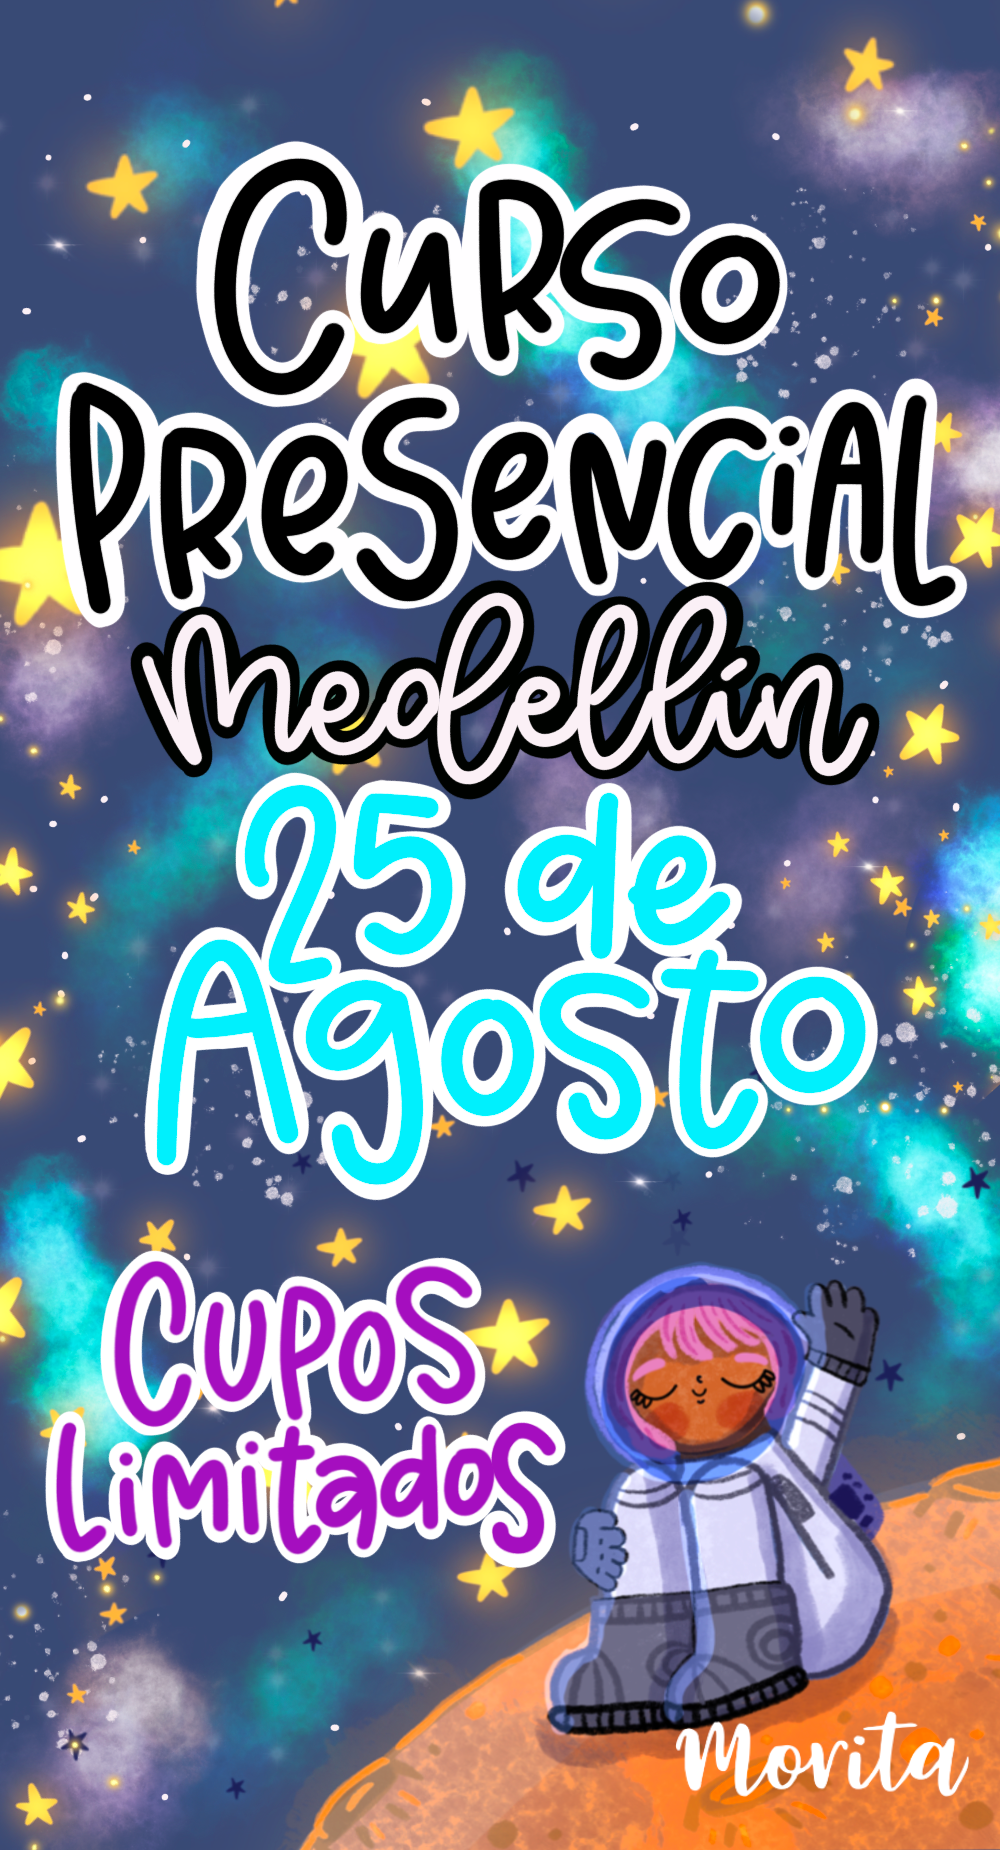 Curso Presencial Medellín